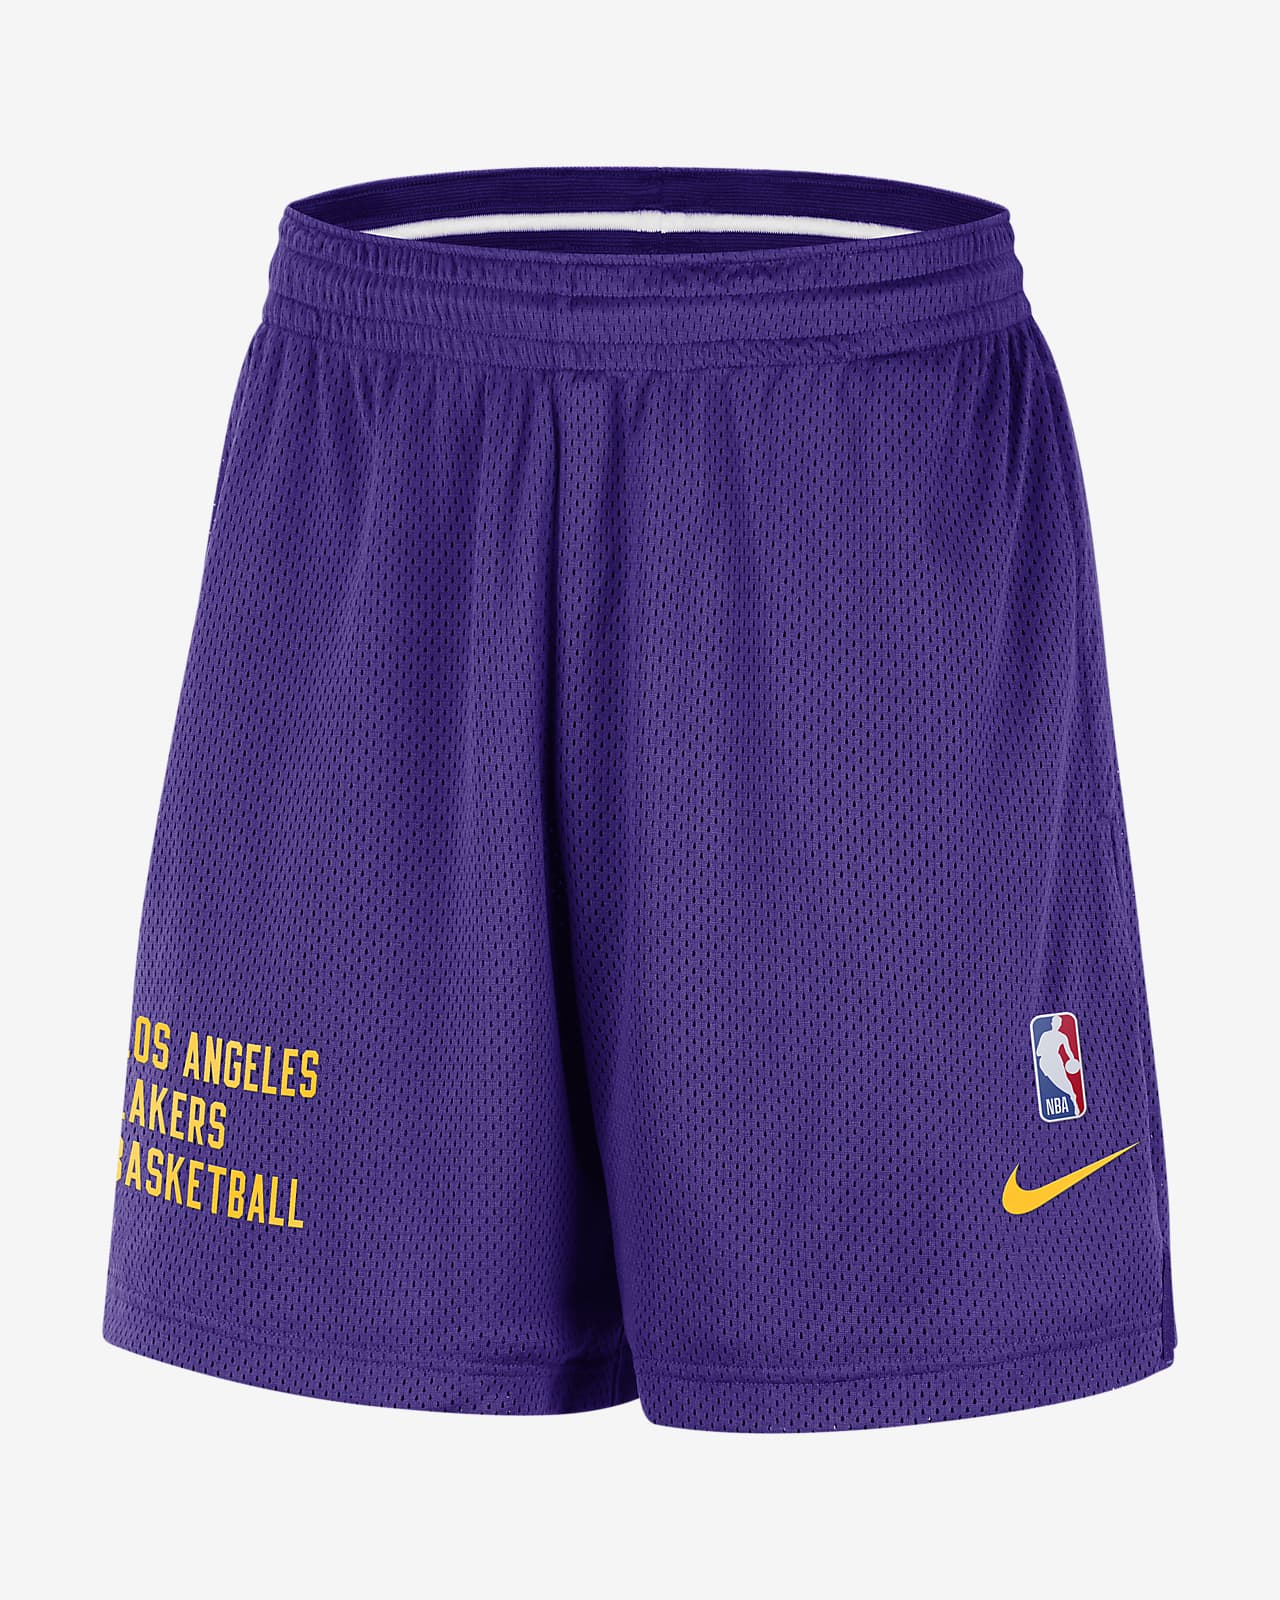 洛杉矶湖人队 Nike NBA 男子网眼布短裤